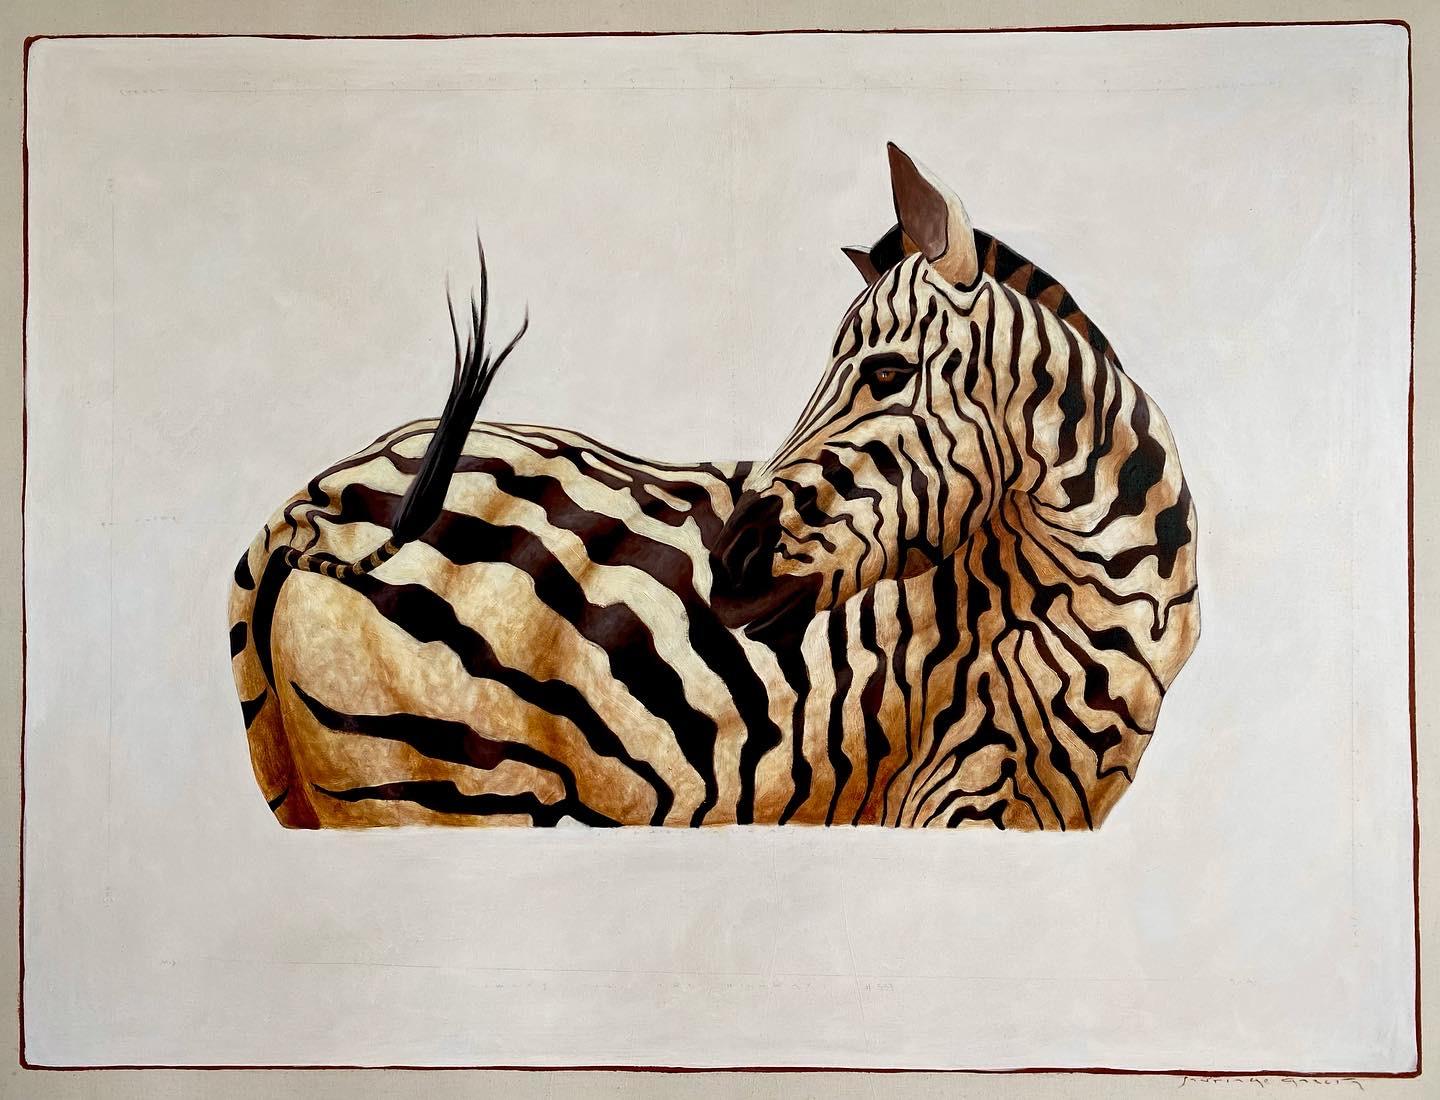 Animal Painting Santiago Garcia - « Zebra n°533 », peinture à l'huile d'un zèbre noir et blanc regardant en arrière, vue latérale